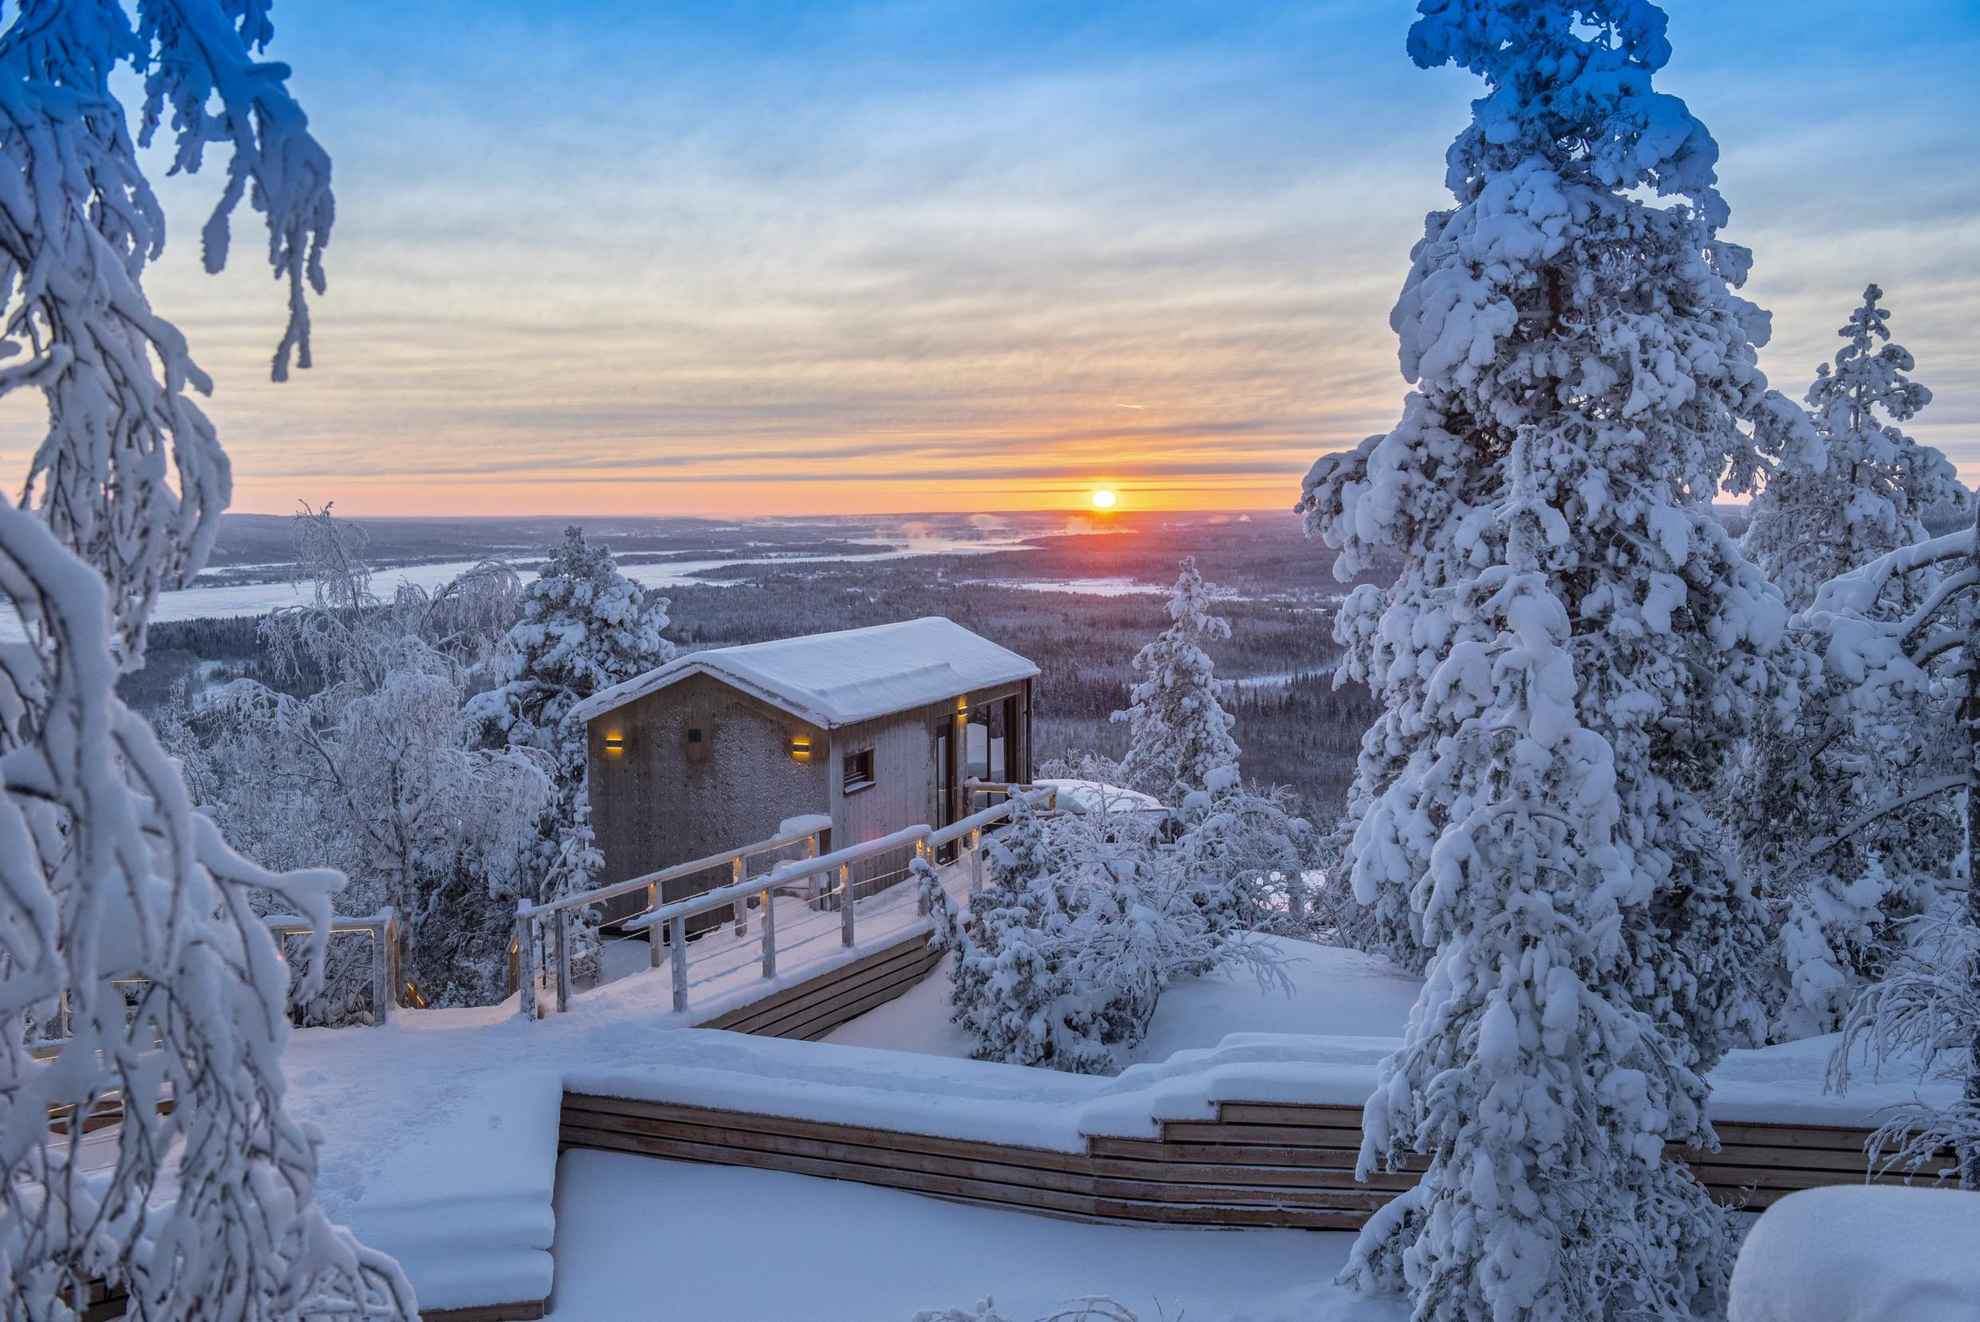 Ein verschneites Chalet in der Lapland View Lodge, während die Sonne untergeht.